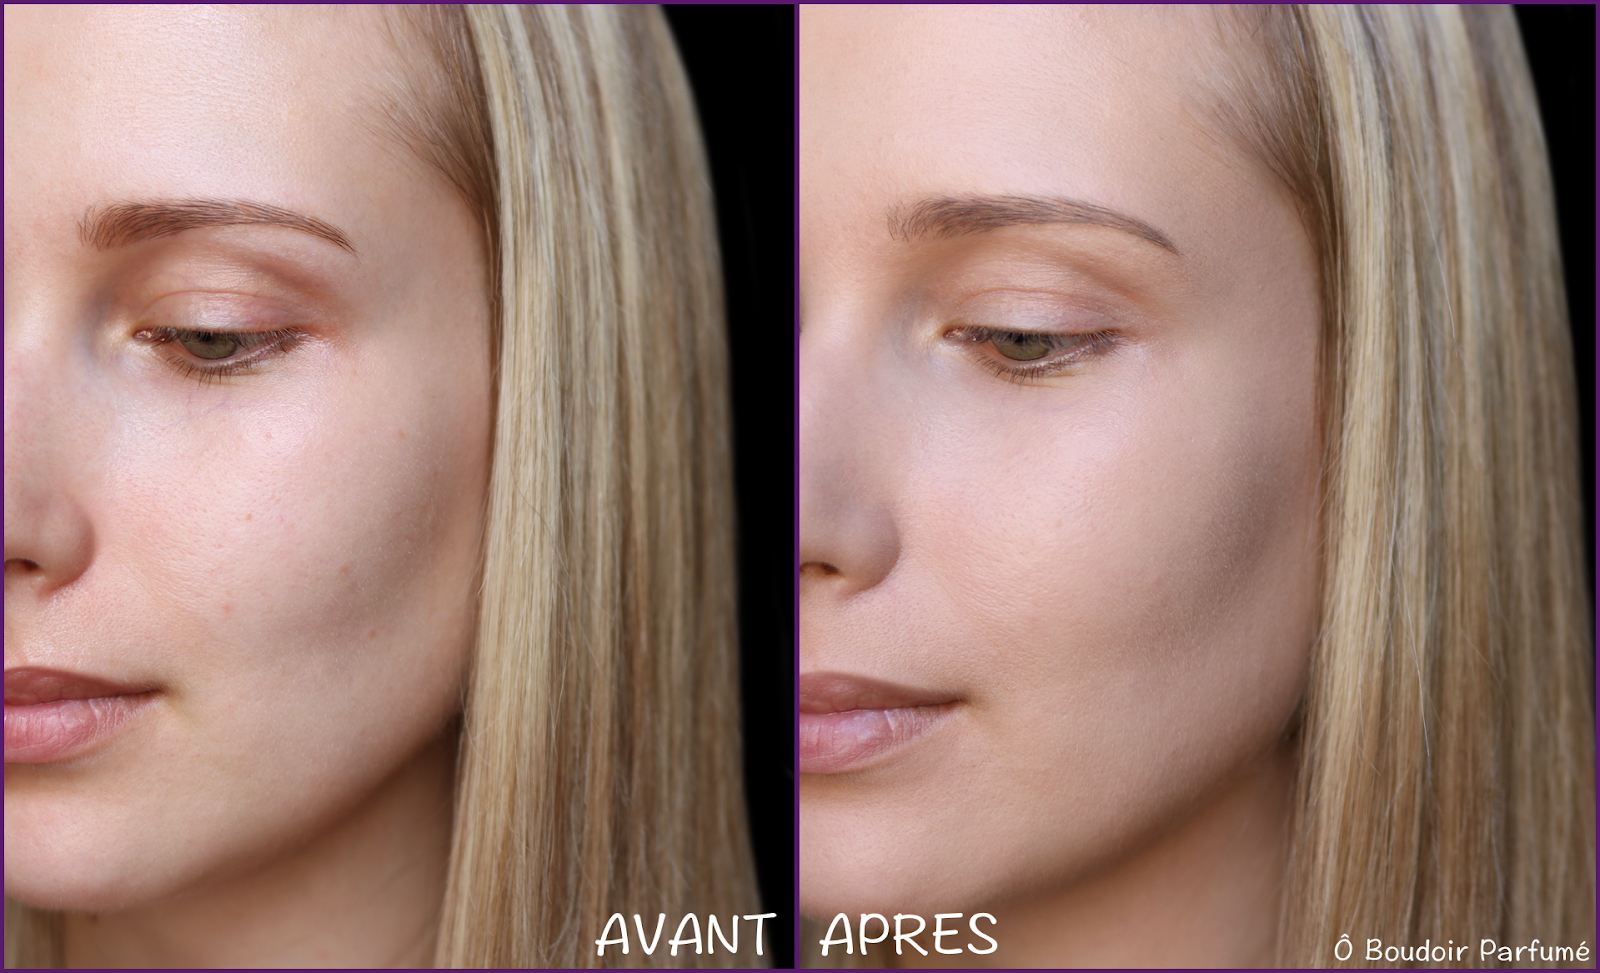 Glow Face Palette: multi-use face makeup palette